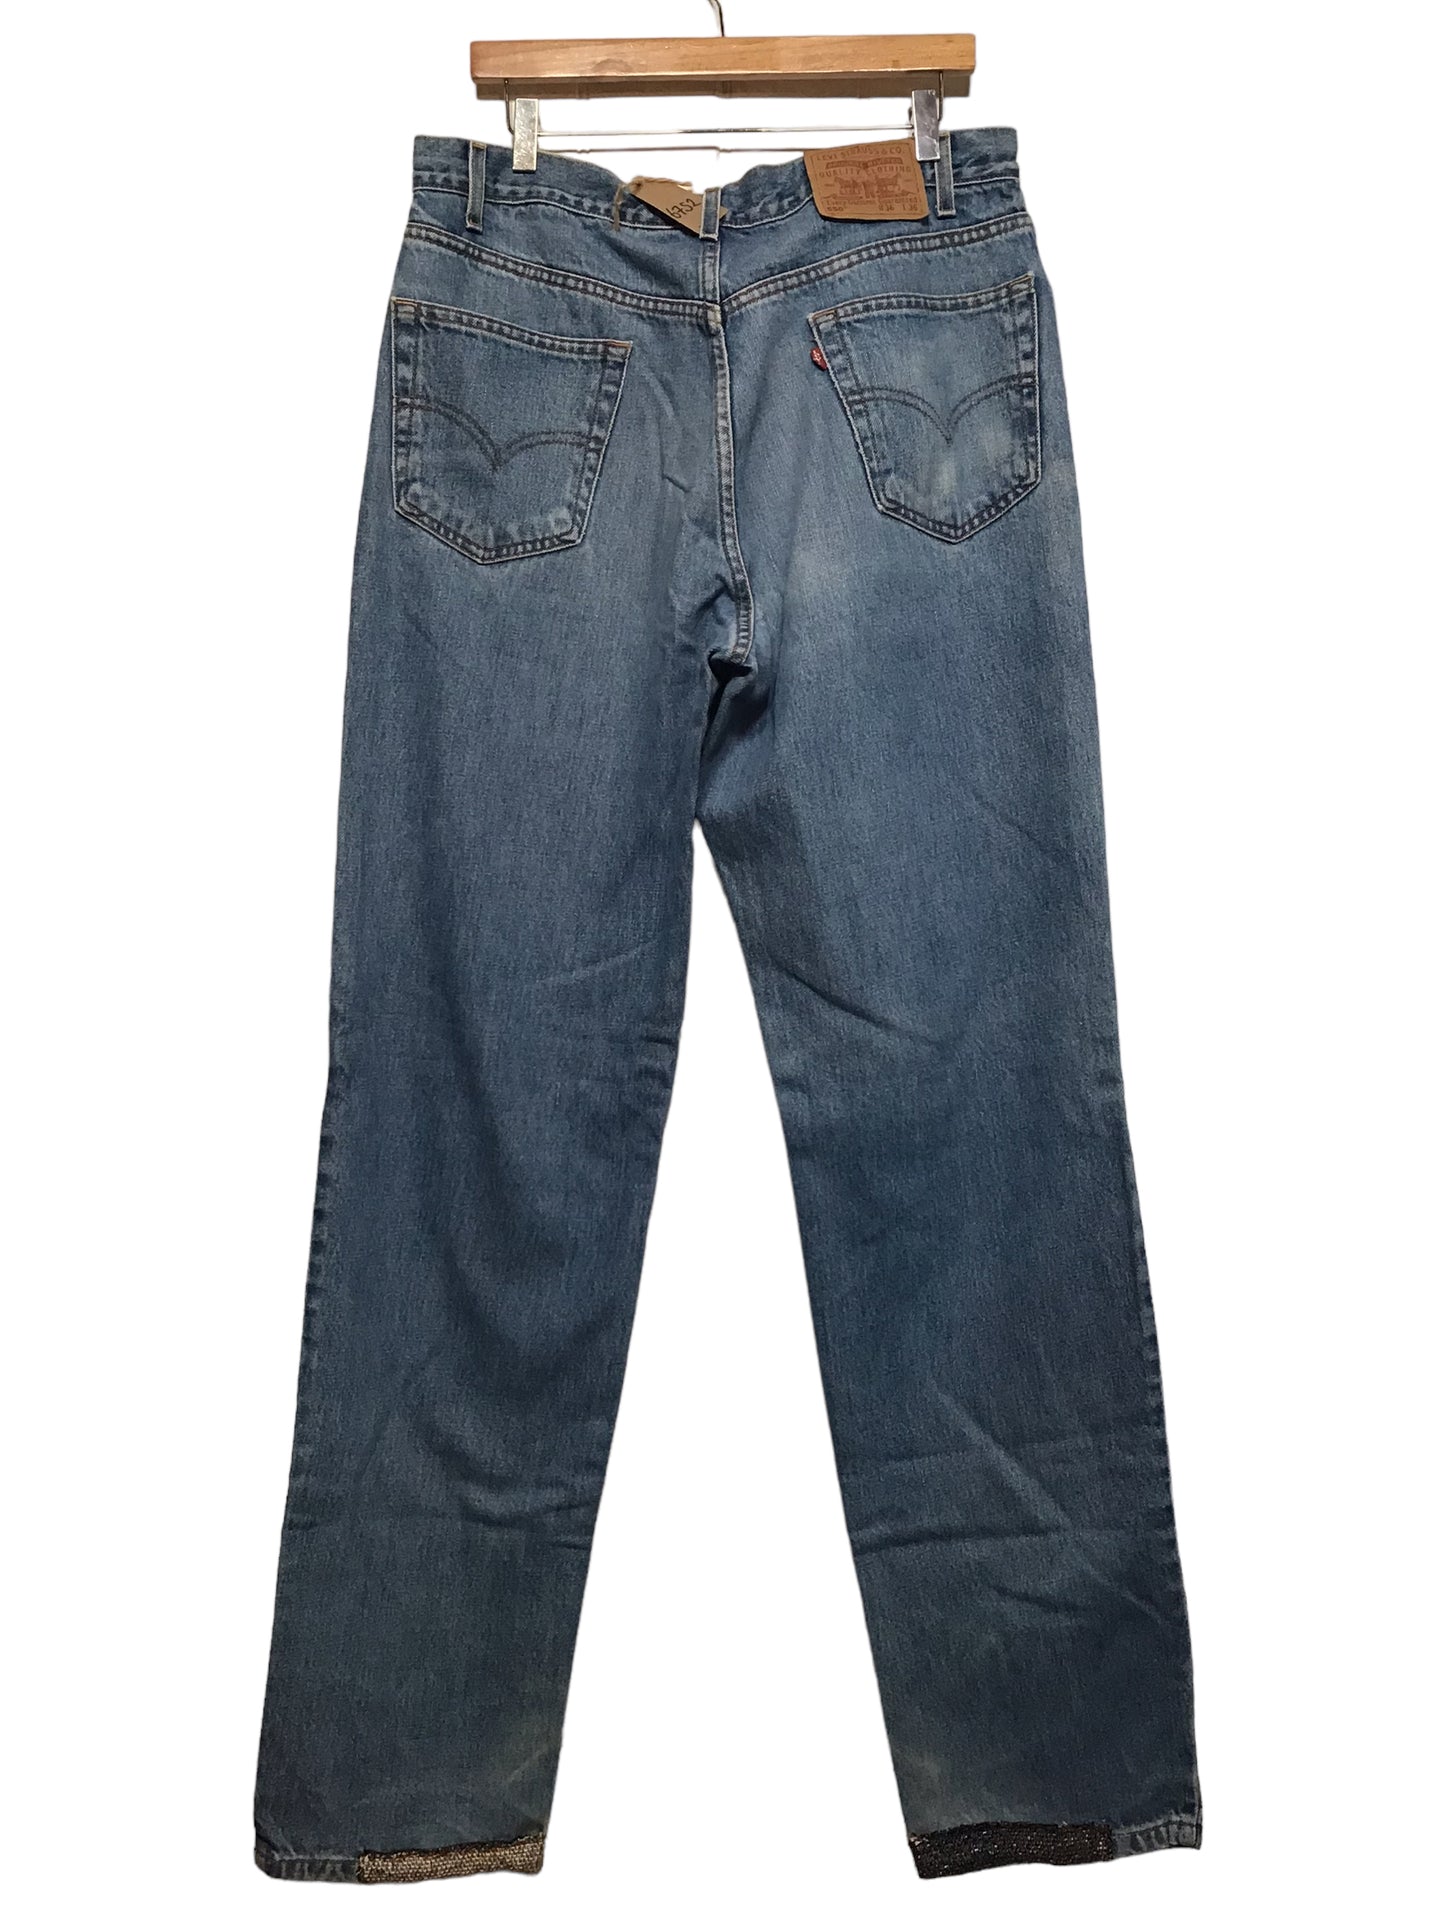 Levi 550 Jeans (36x36)